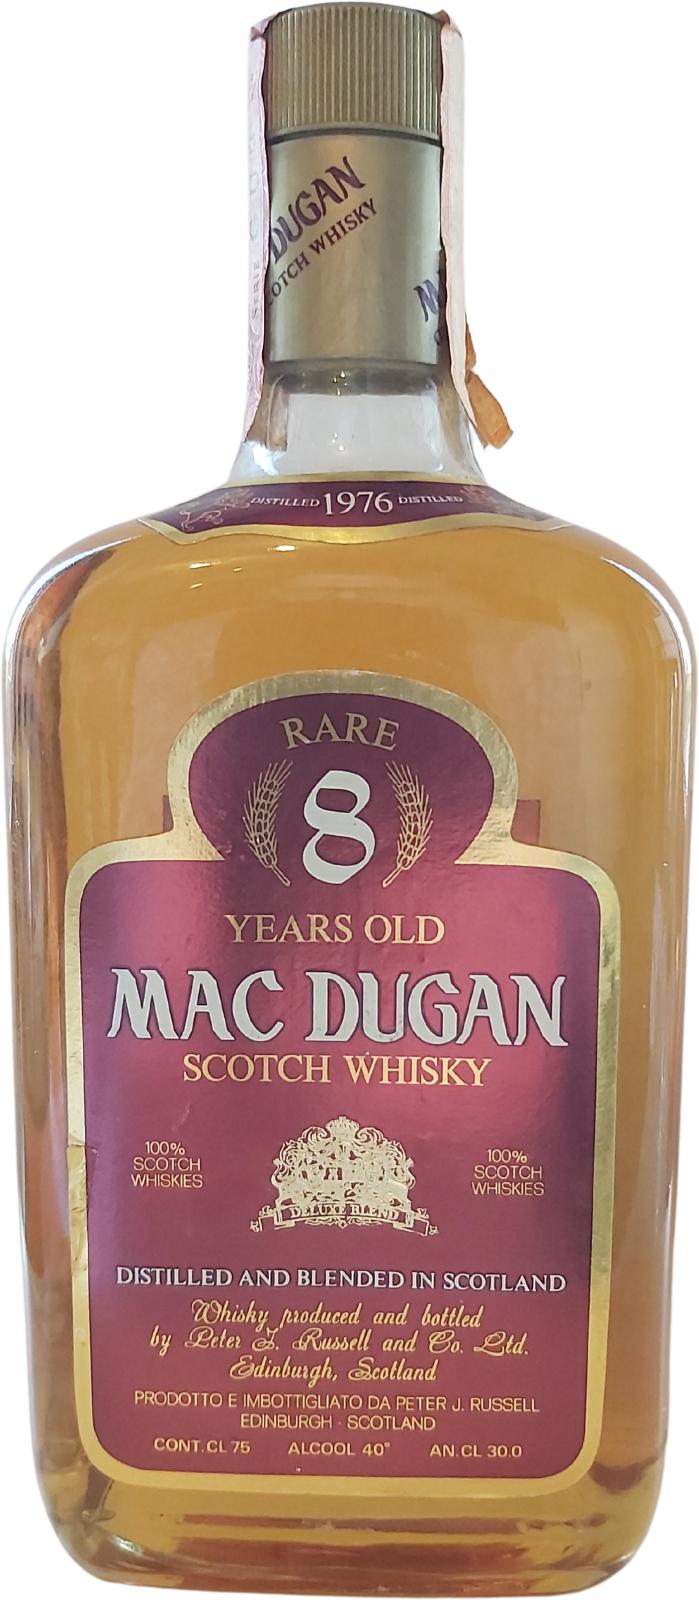 Mac Dugan 1976